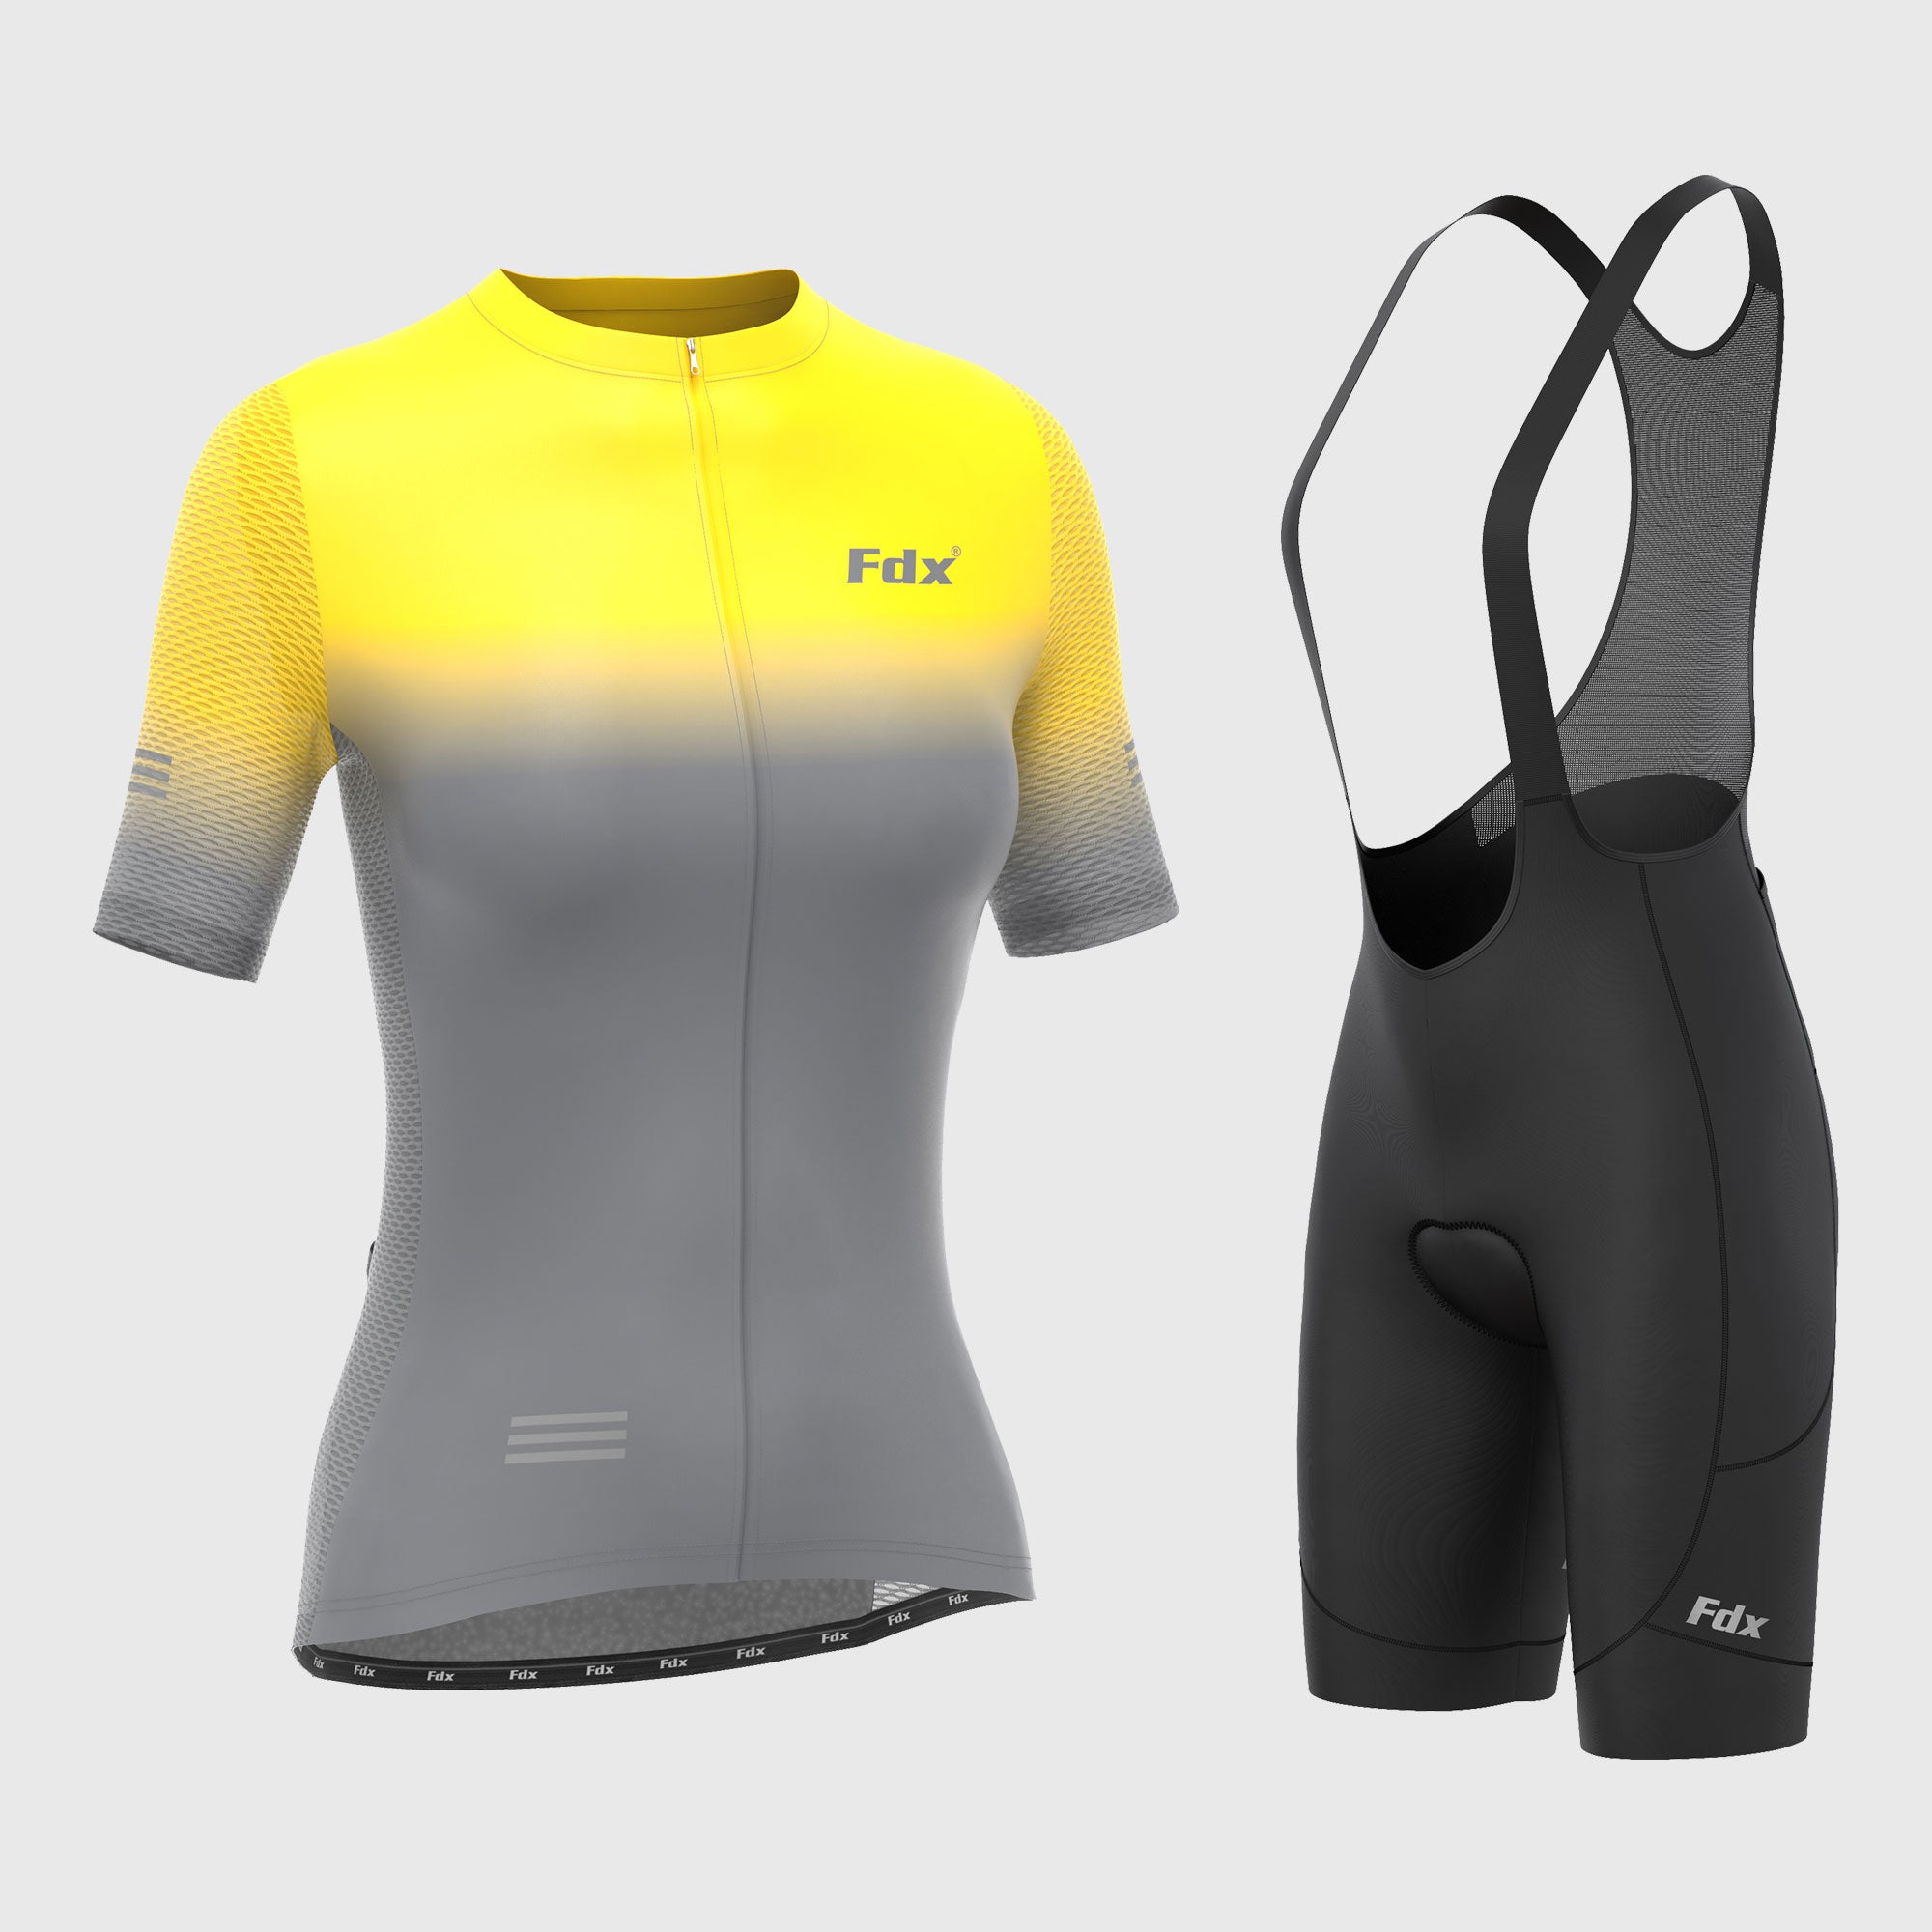 Fdx Women's Set Duo Yellow / Grey Short Sleeve Cycling Jersey & Cargo Bib Shorts